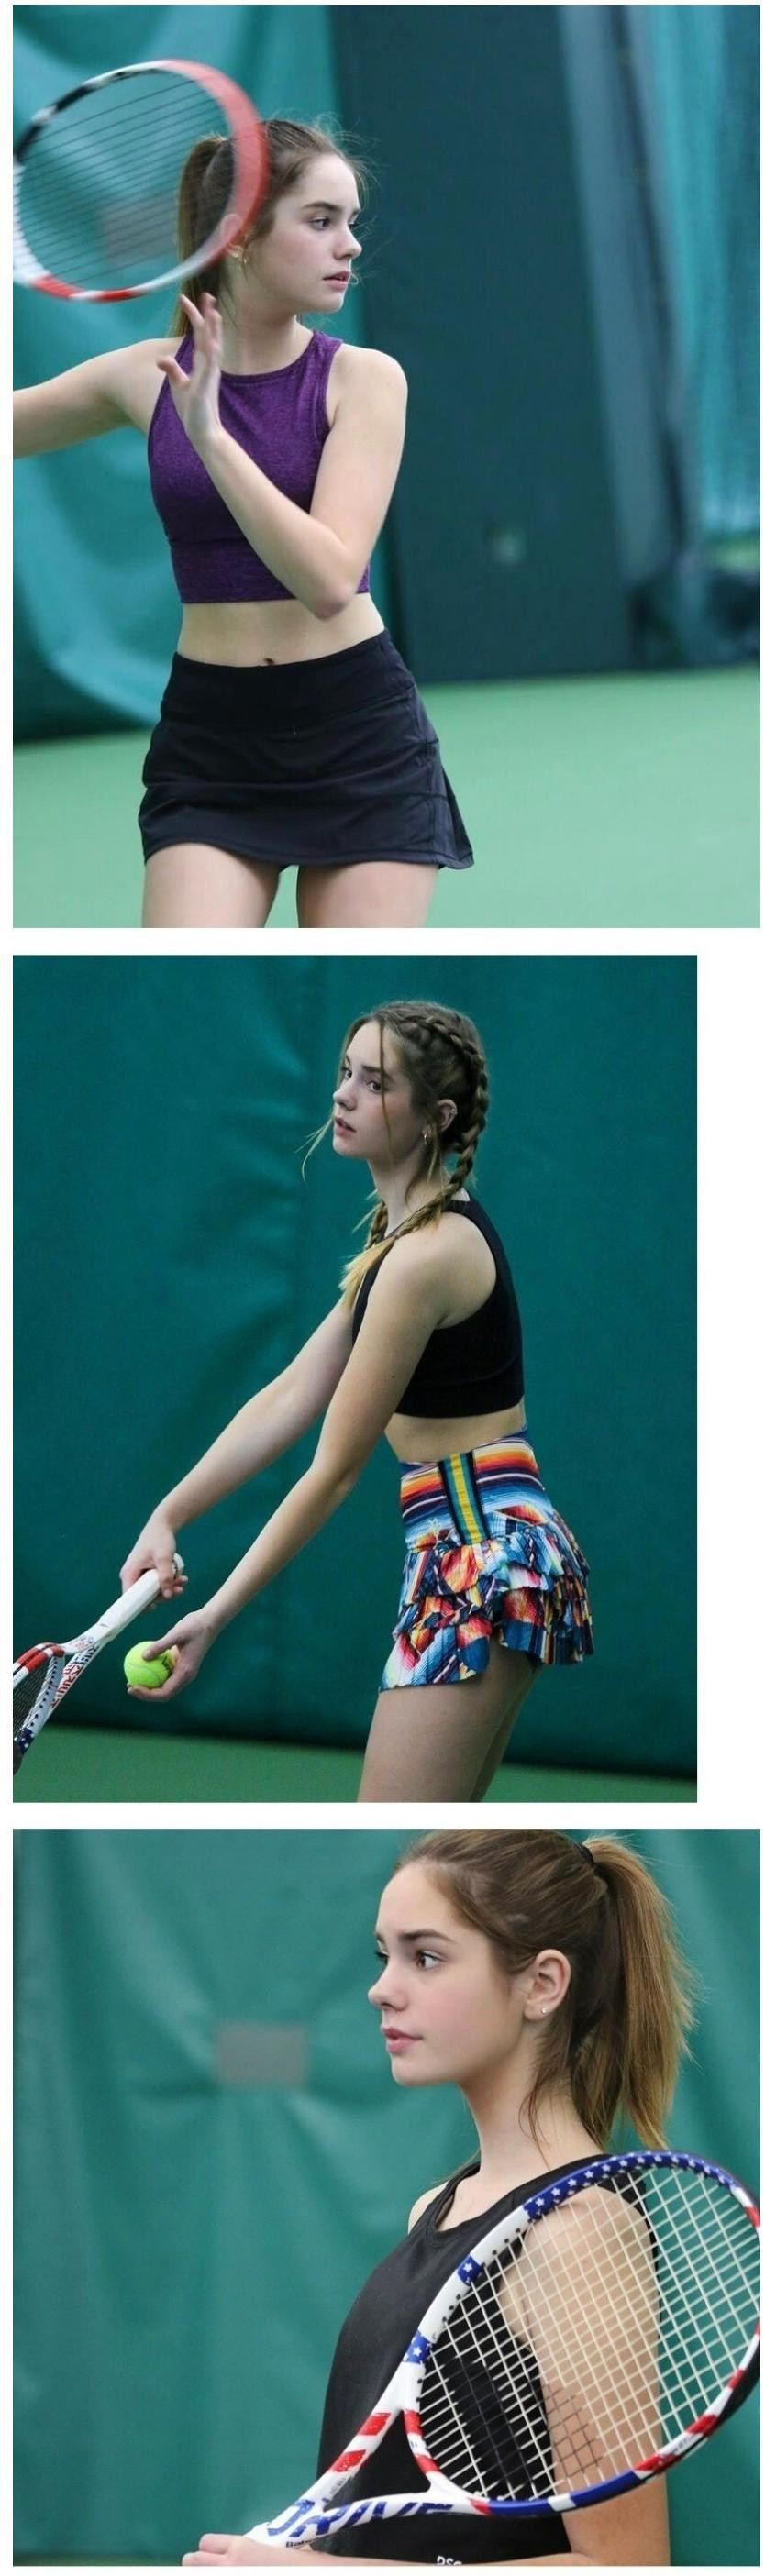 썸네일-미국 여고생 테니스 선수-이미지